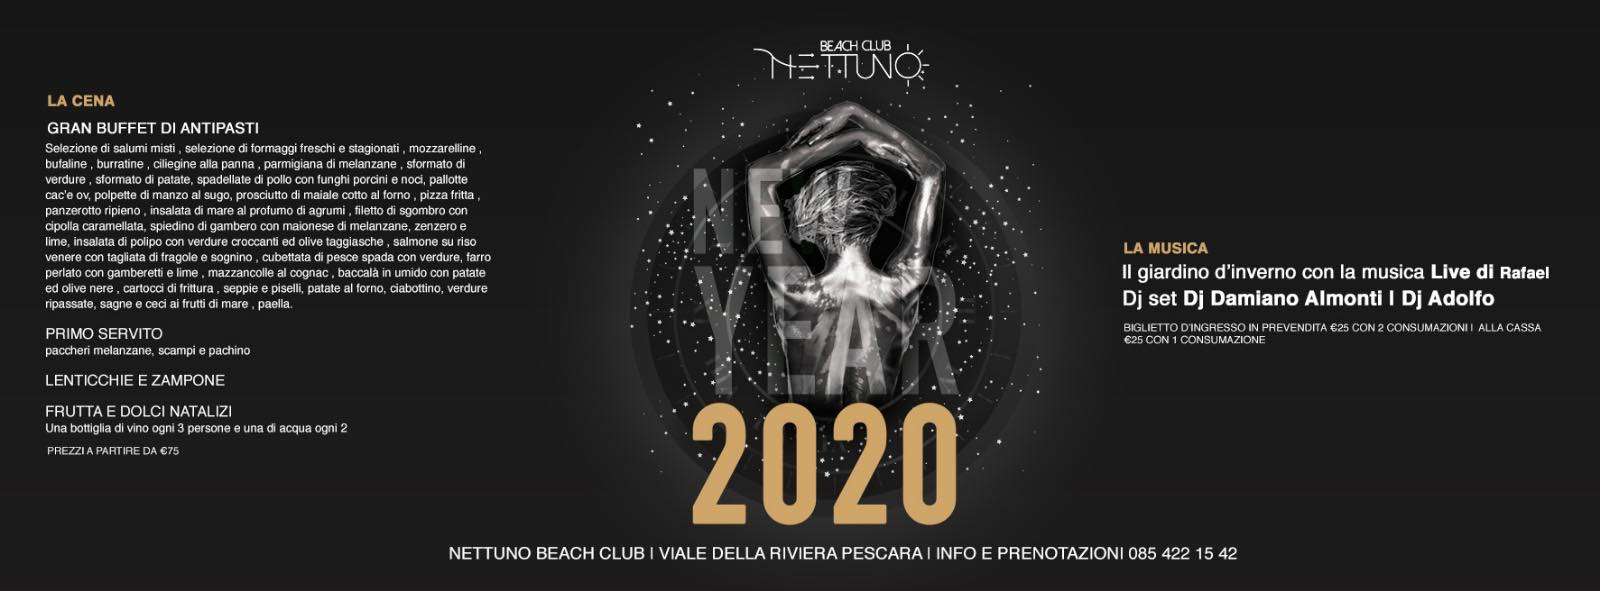 Capodanno 2020 Nettuno Pescara